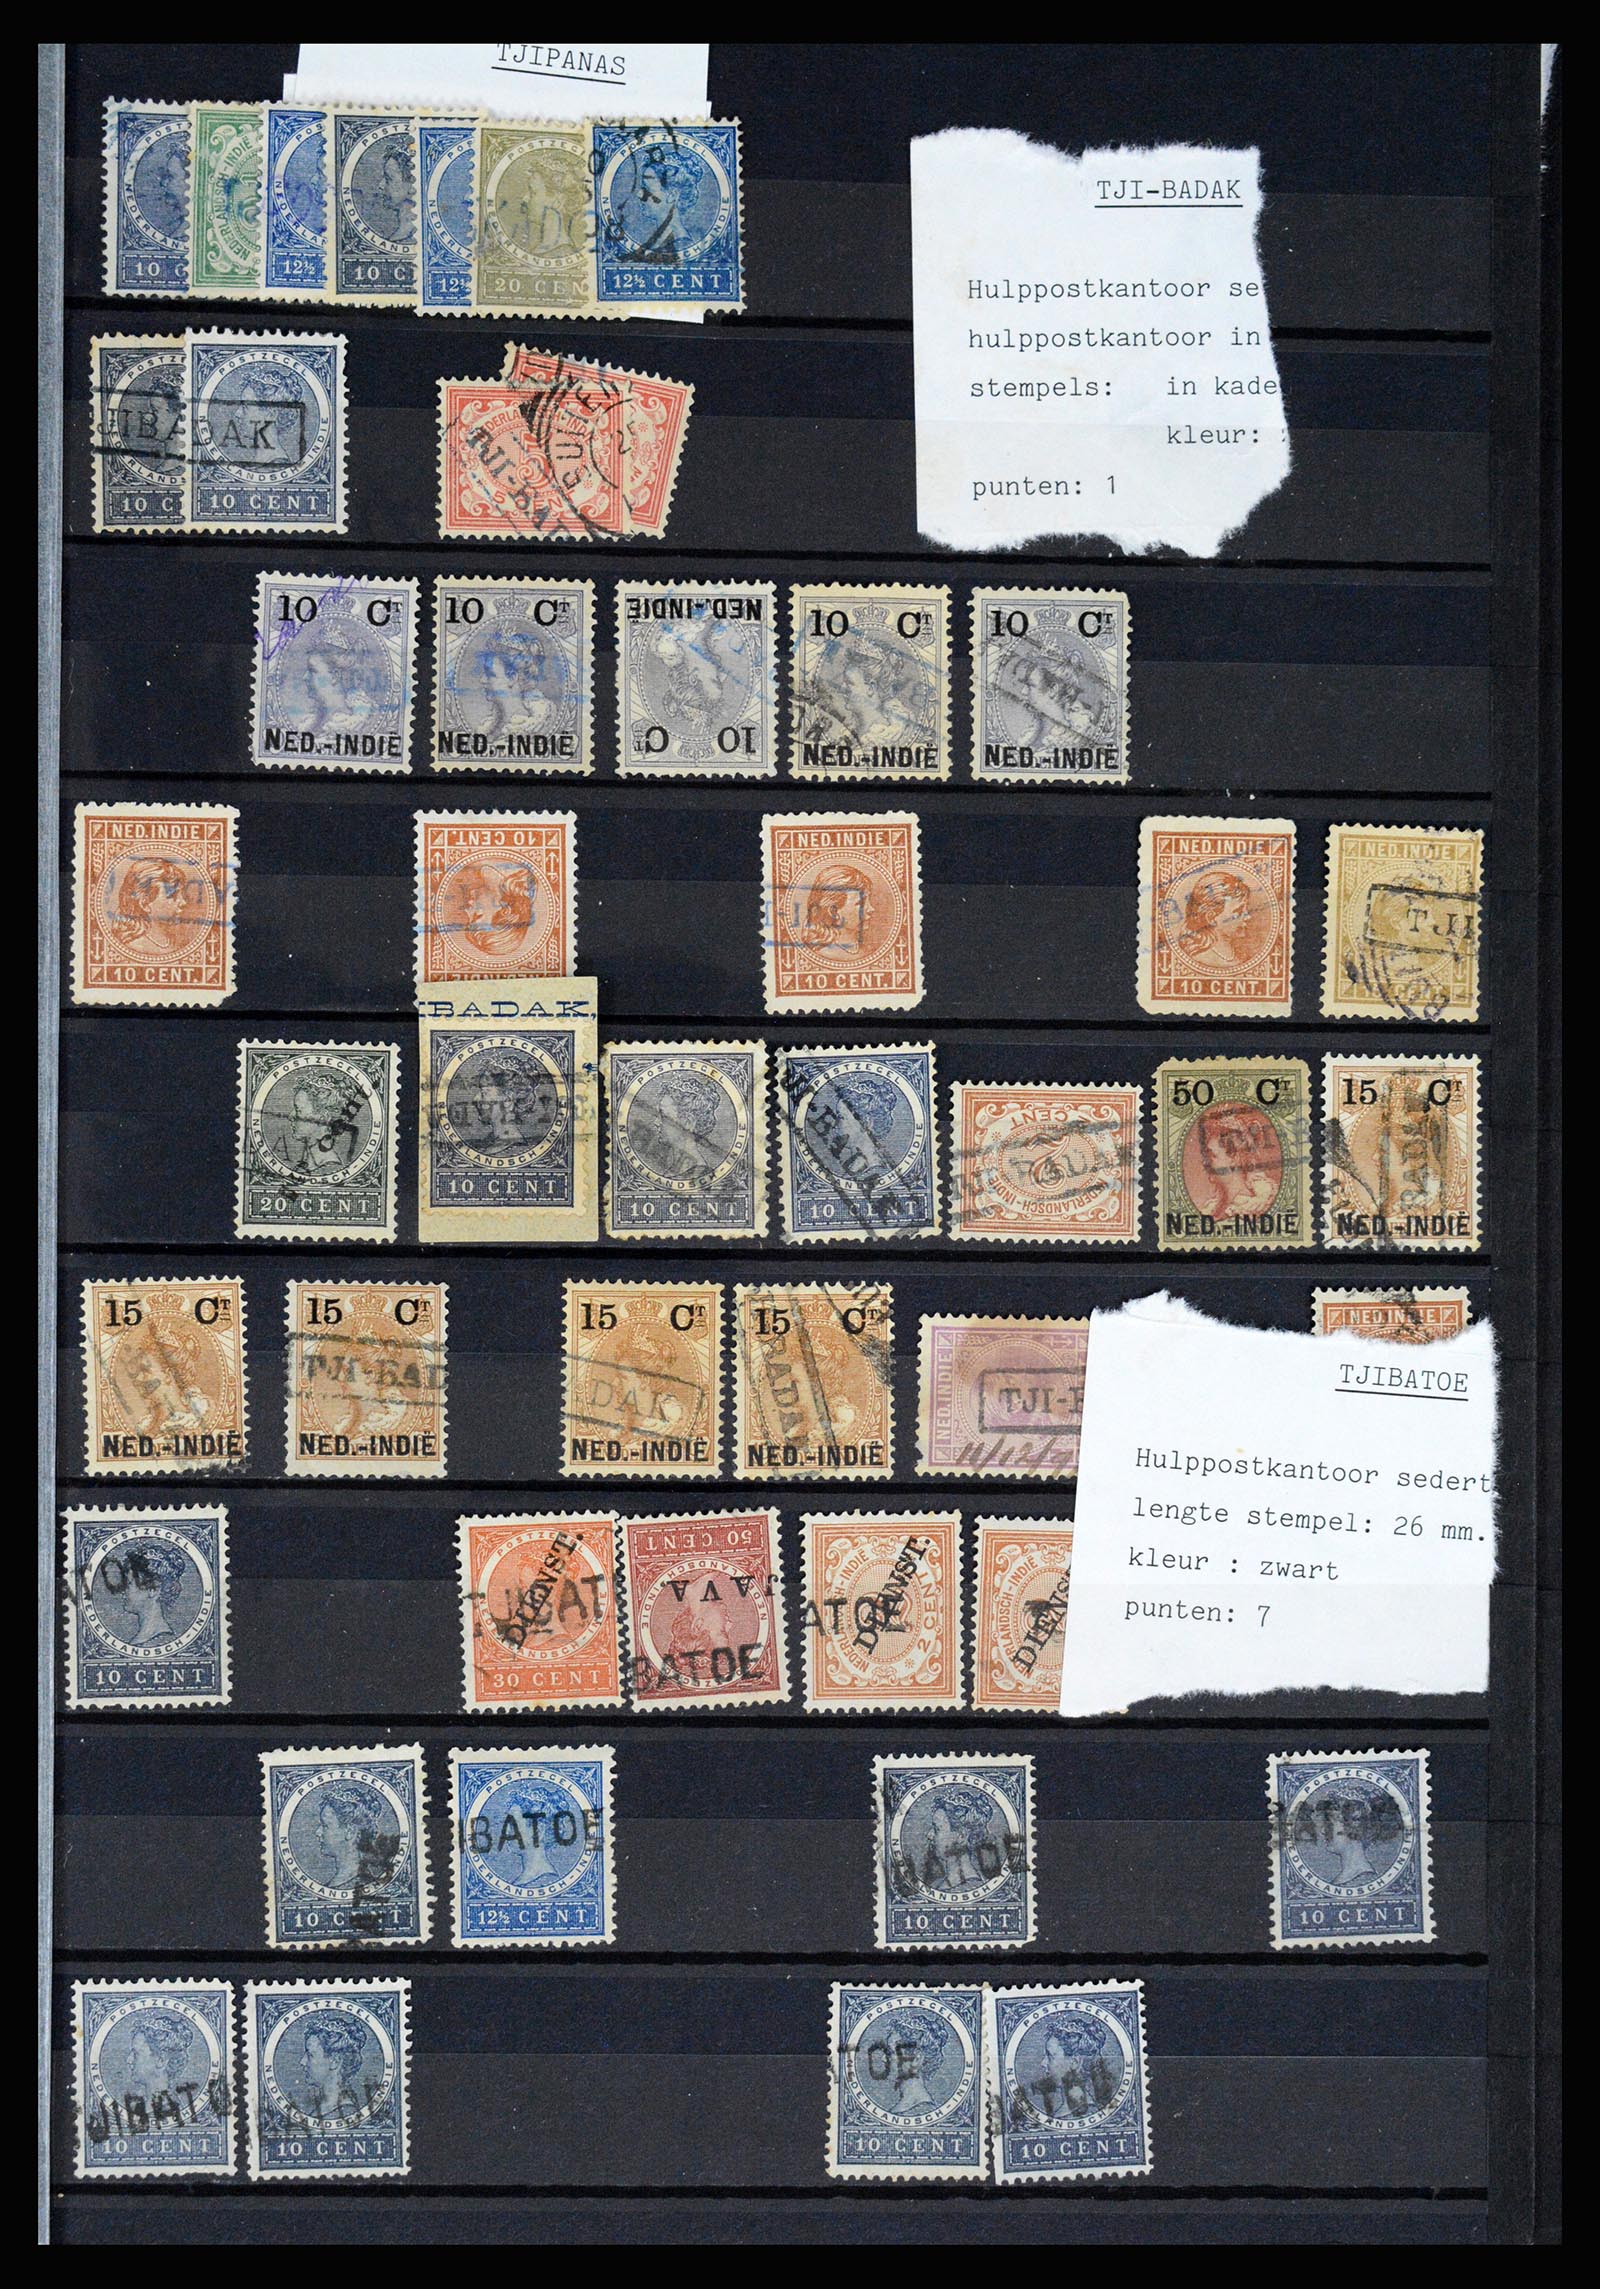 36512 071 - Stamp collection 36512 Nederlands Indië stempels 1872-1930.